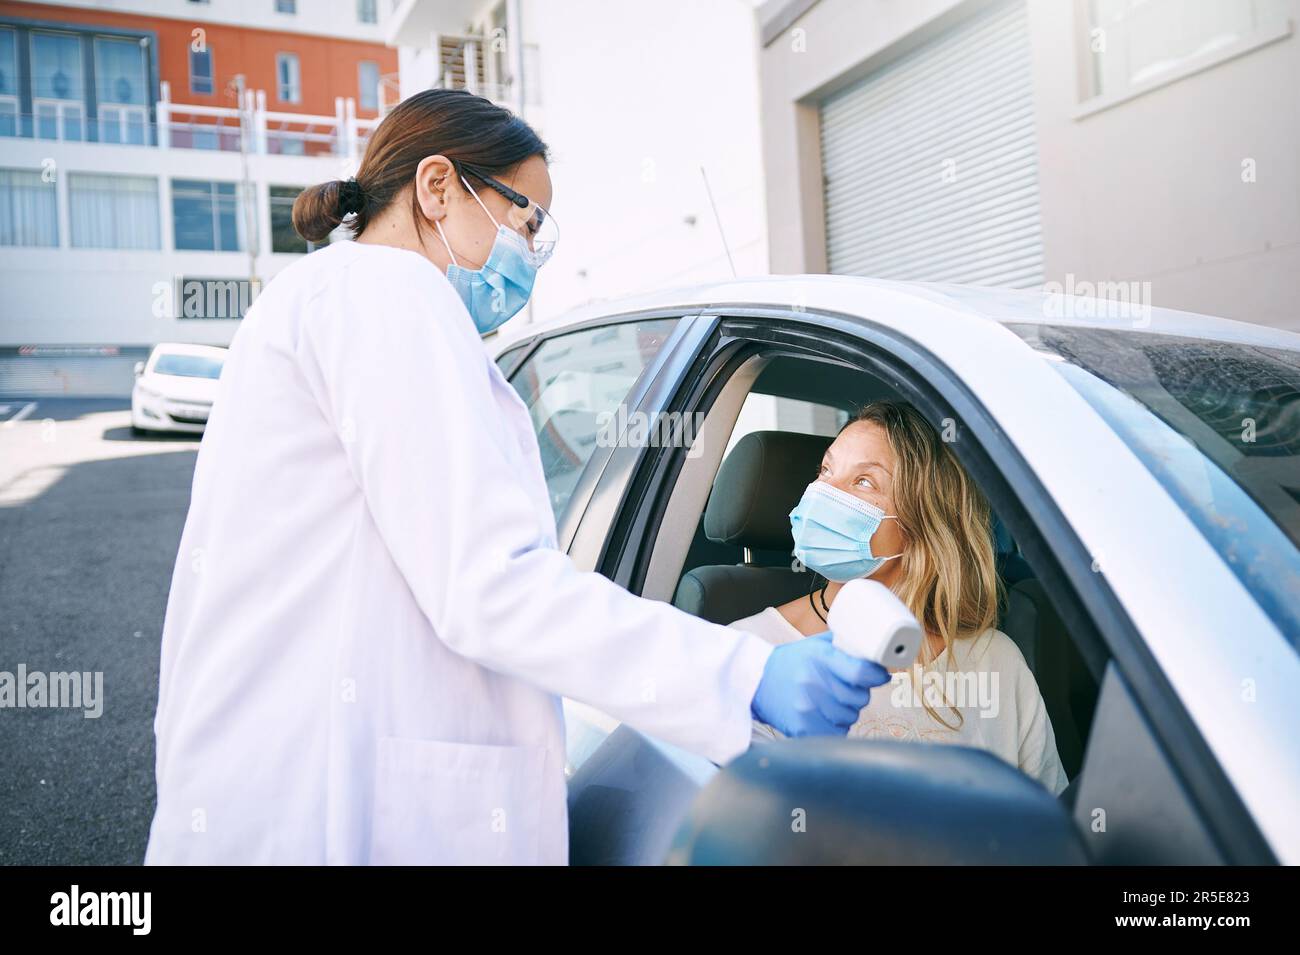 Achten Sie darauf, dass die Temperatur auf der Markierung liegt. Eine maskierte junge Frau, die sich von einem Arzt die Temperatur messen lässt, während sie in ihrem Auto sitzt. Stockfoto